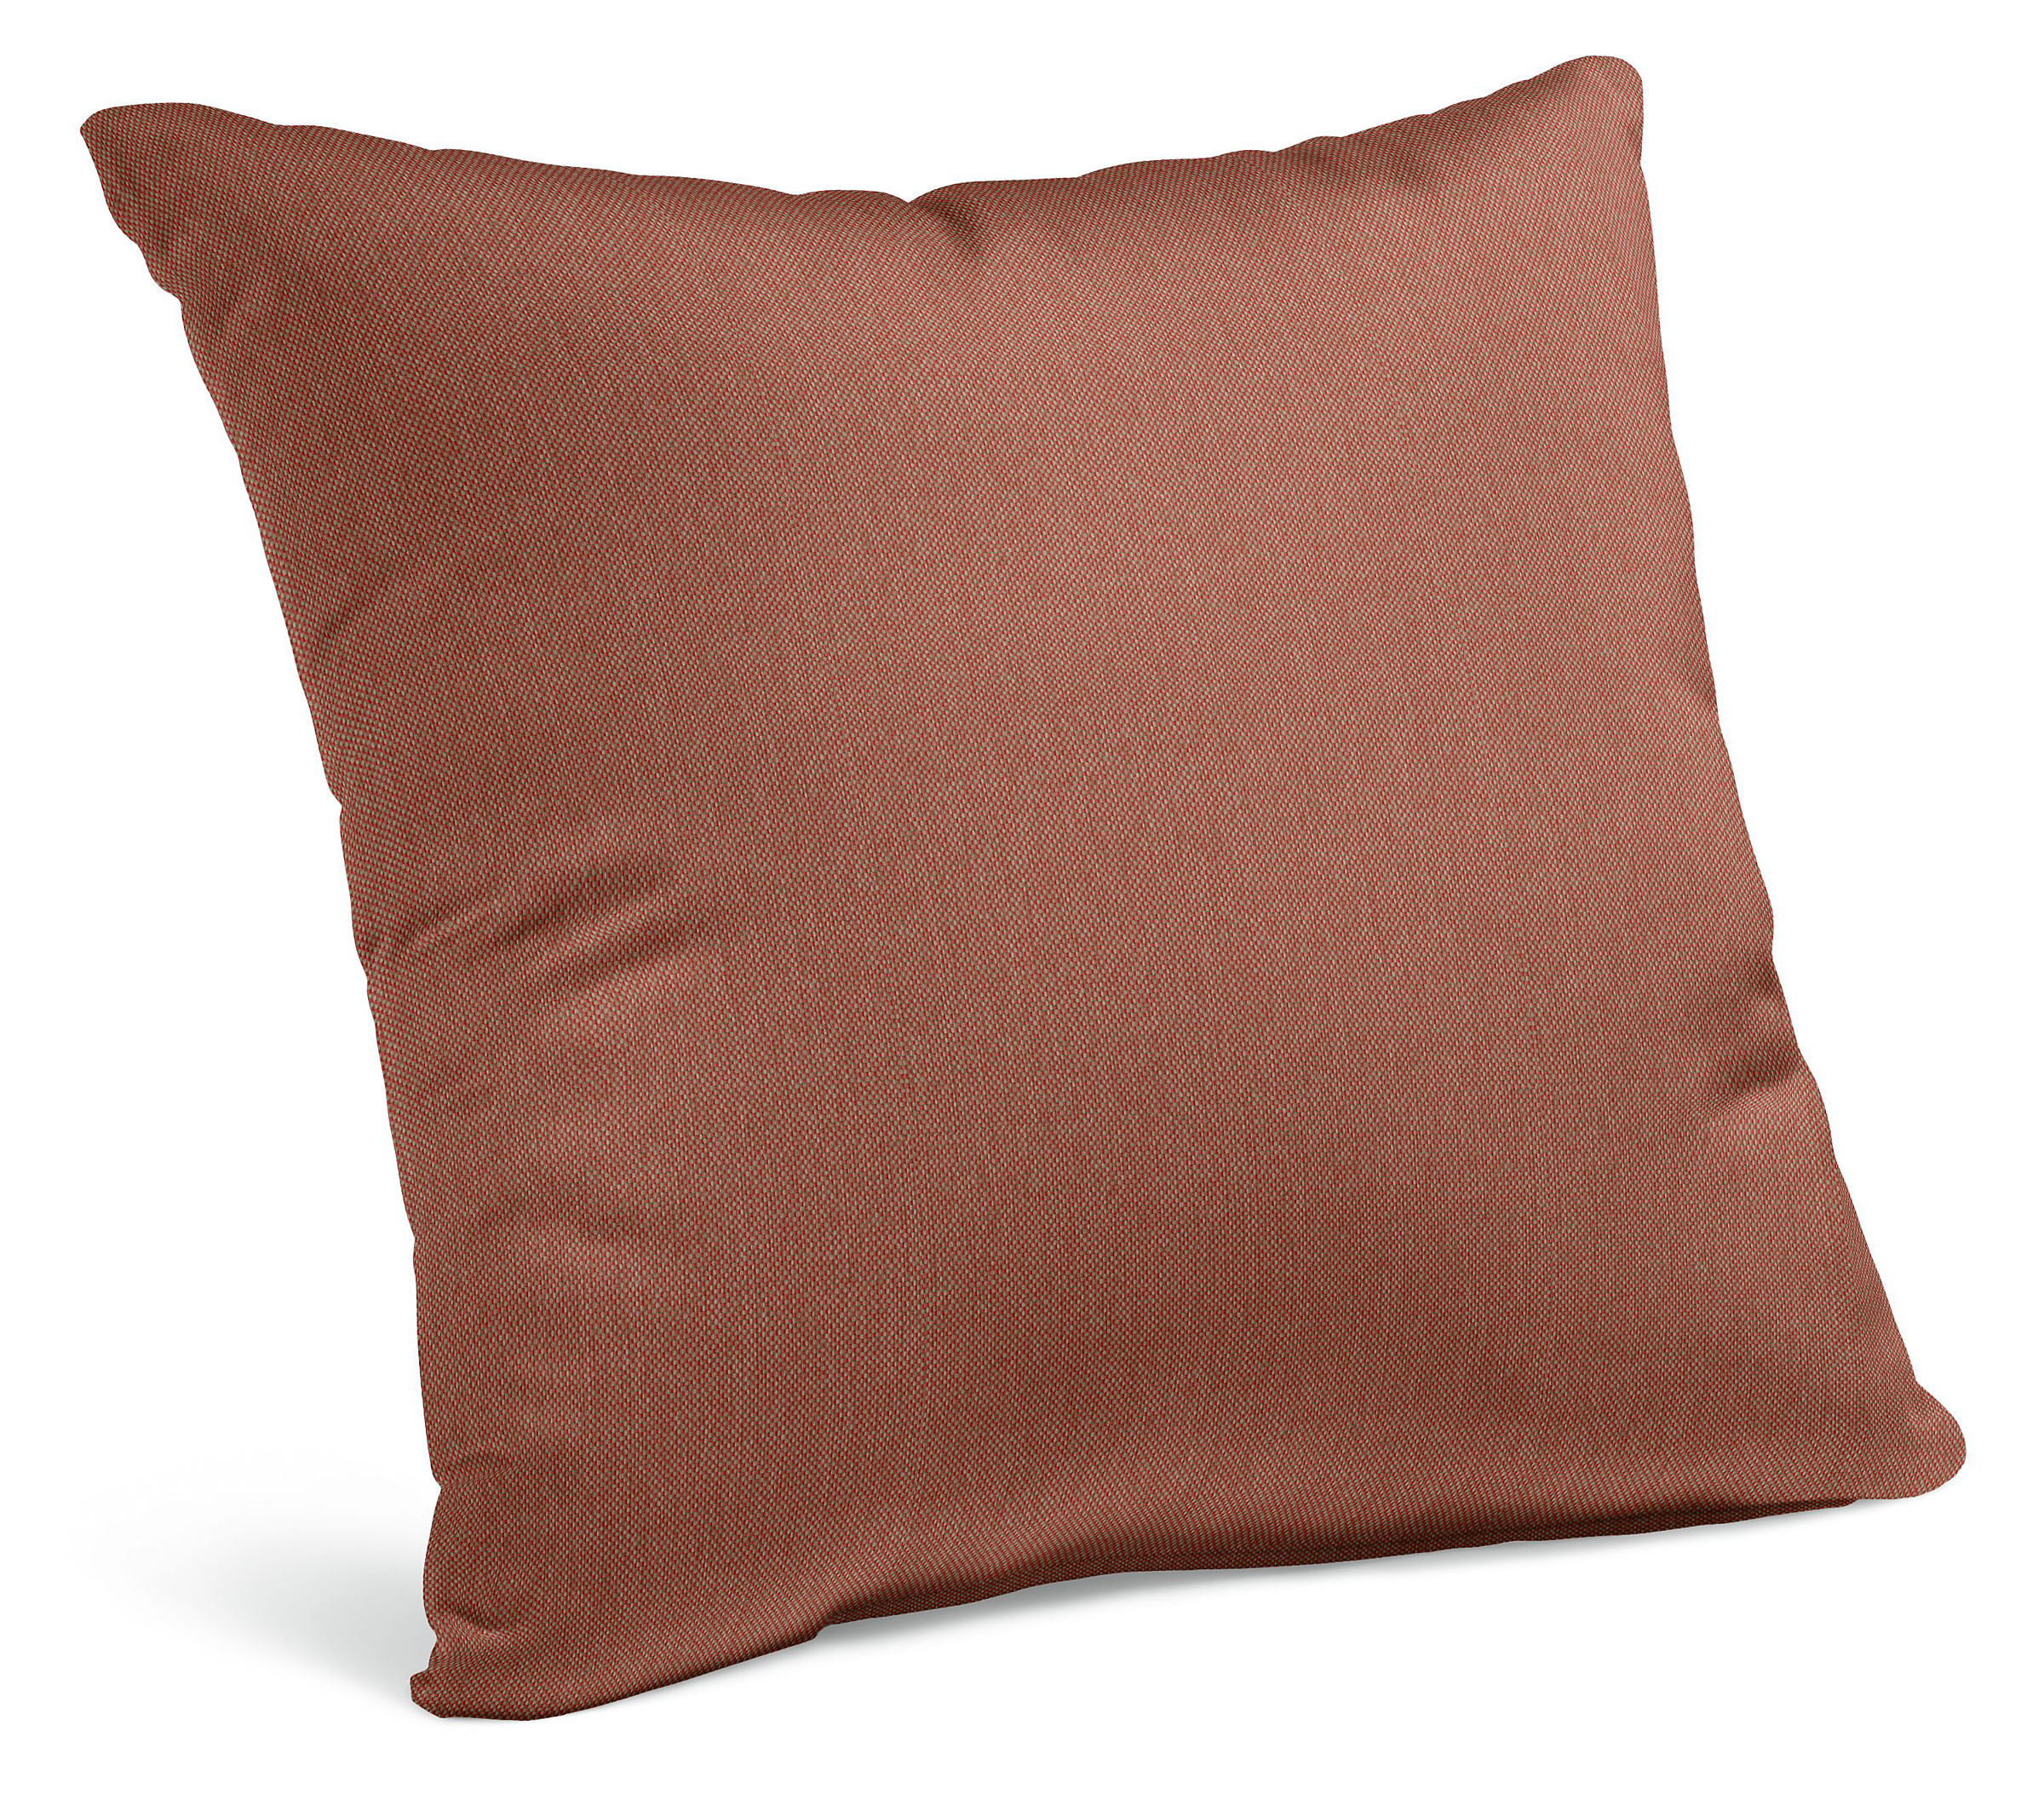 Cast Outdoor Pillows